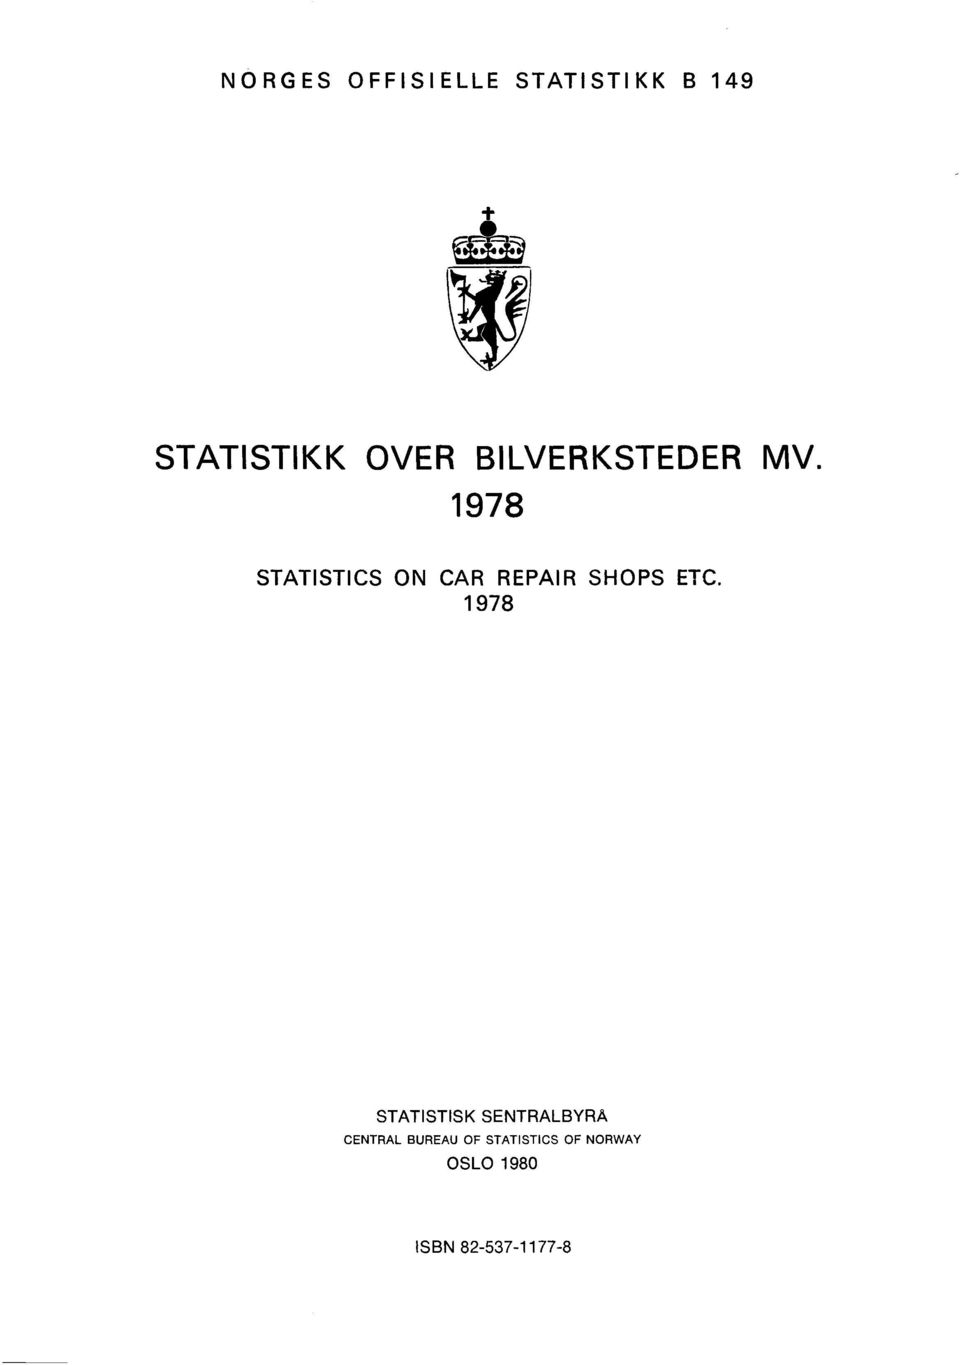 1978 STATISTICS ON CAR REPAIR SHOPS ETC.